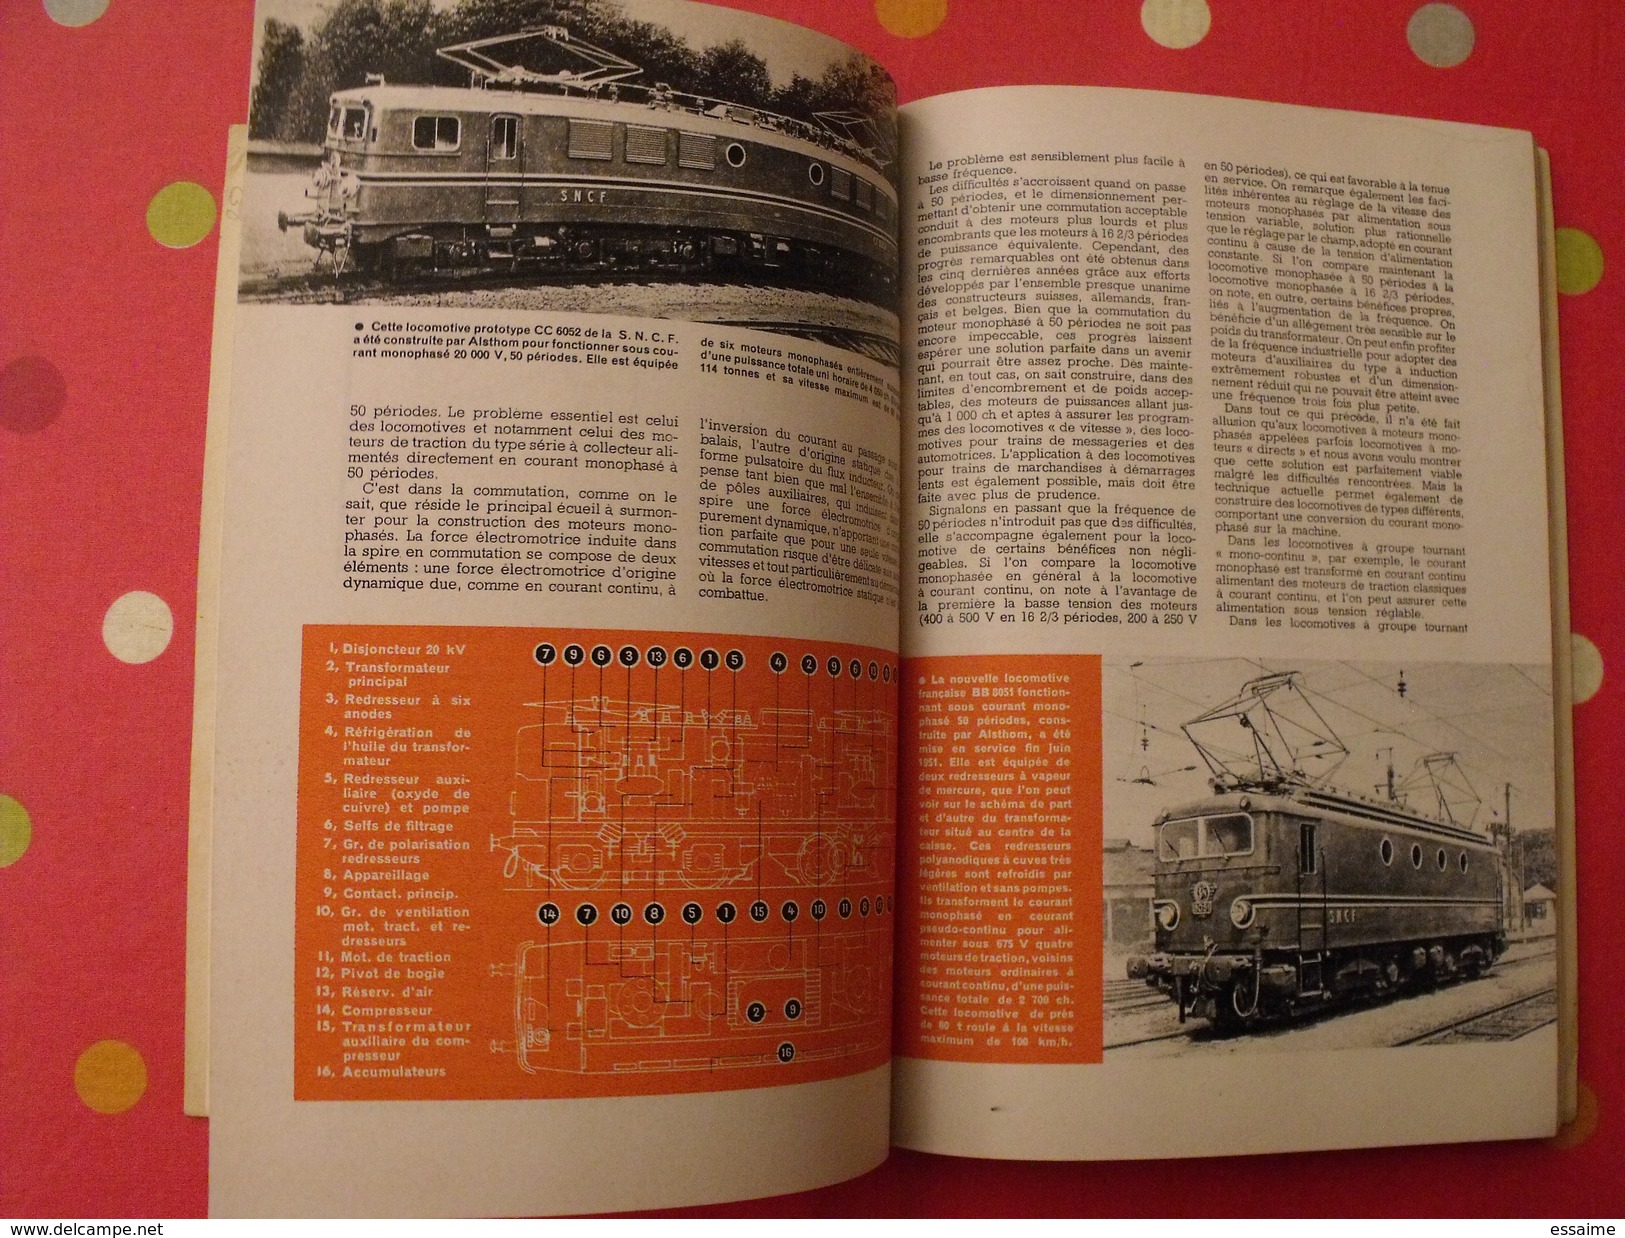 Science et Vie. n° spécial chemins de fer 1952. illustrations train locomotive micheline autorail